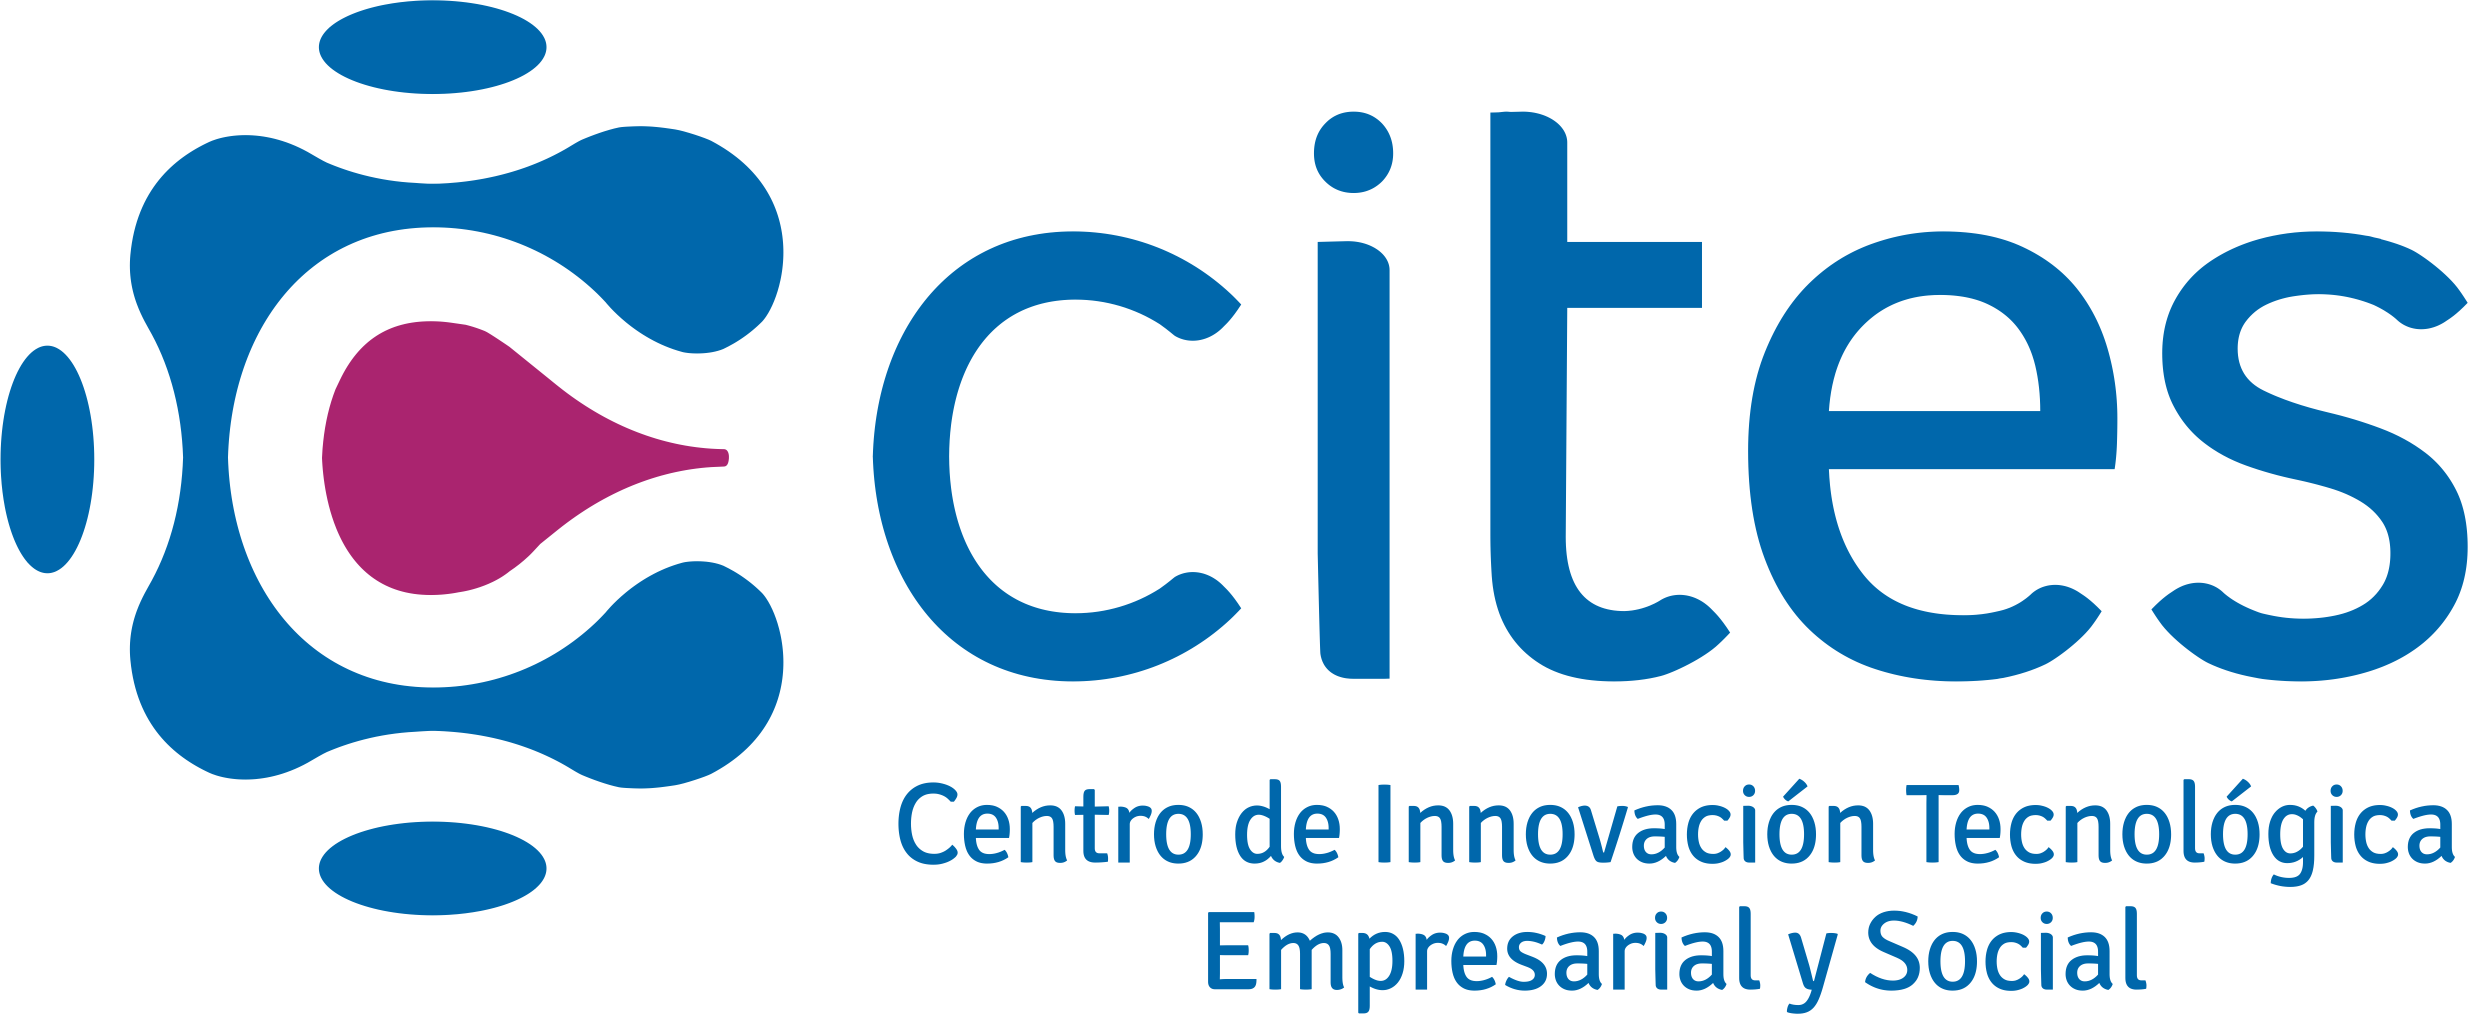 CITES - Centro de Innovación Tecnológica, Empresarial y Social